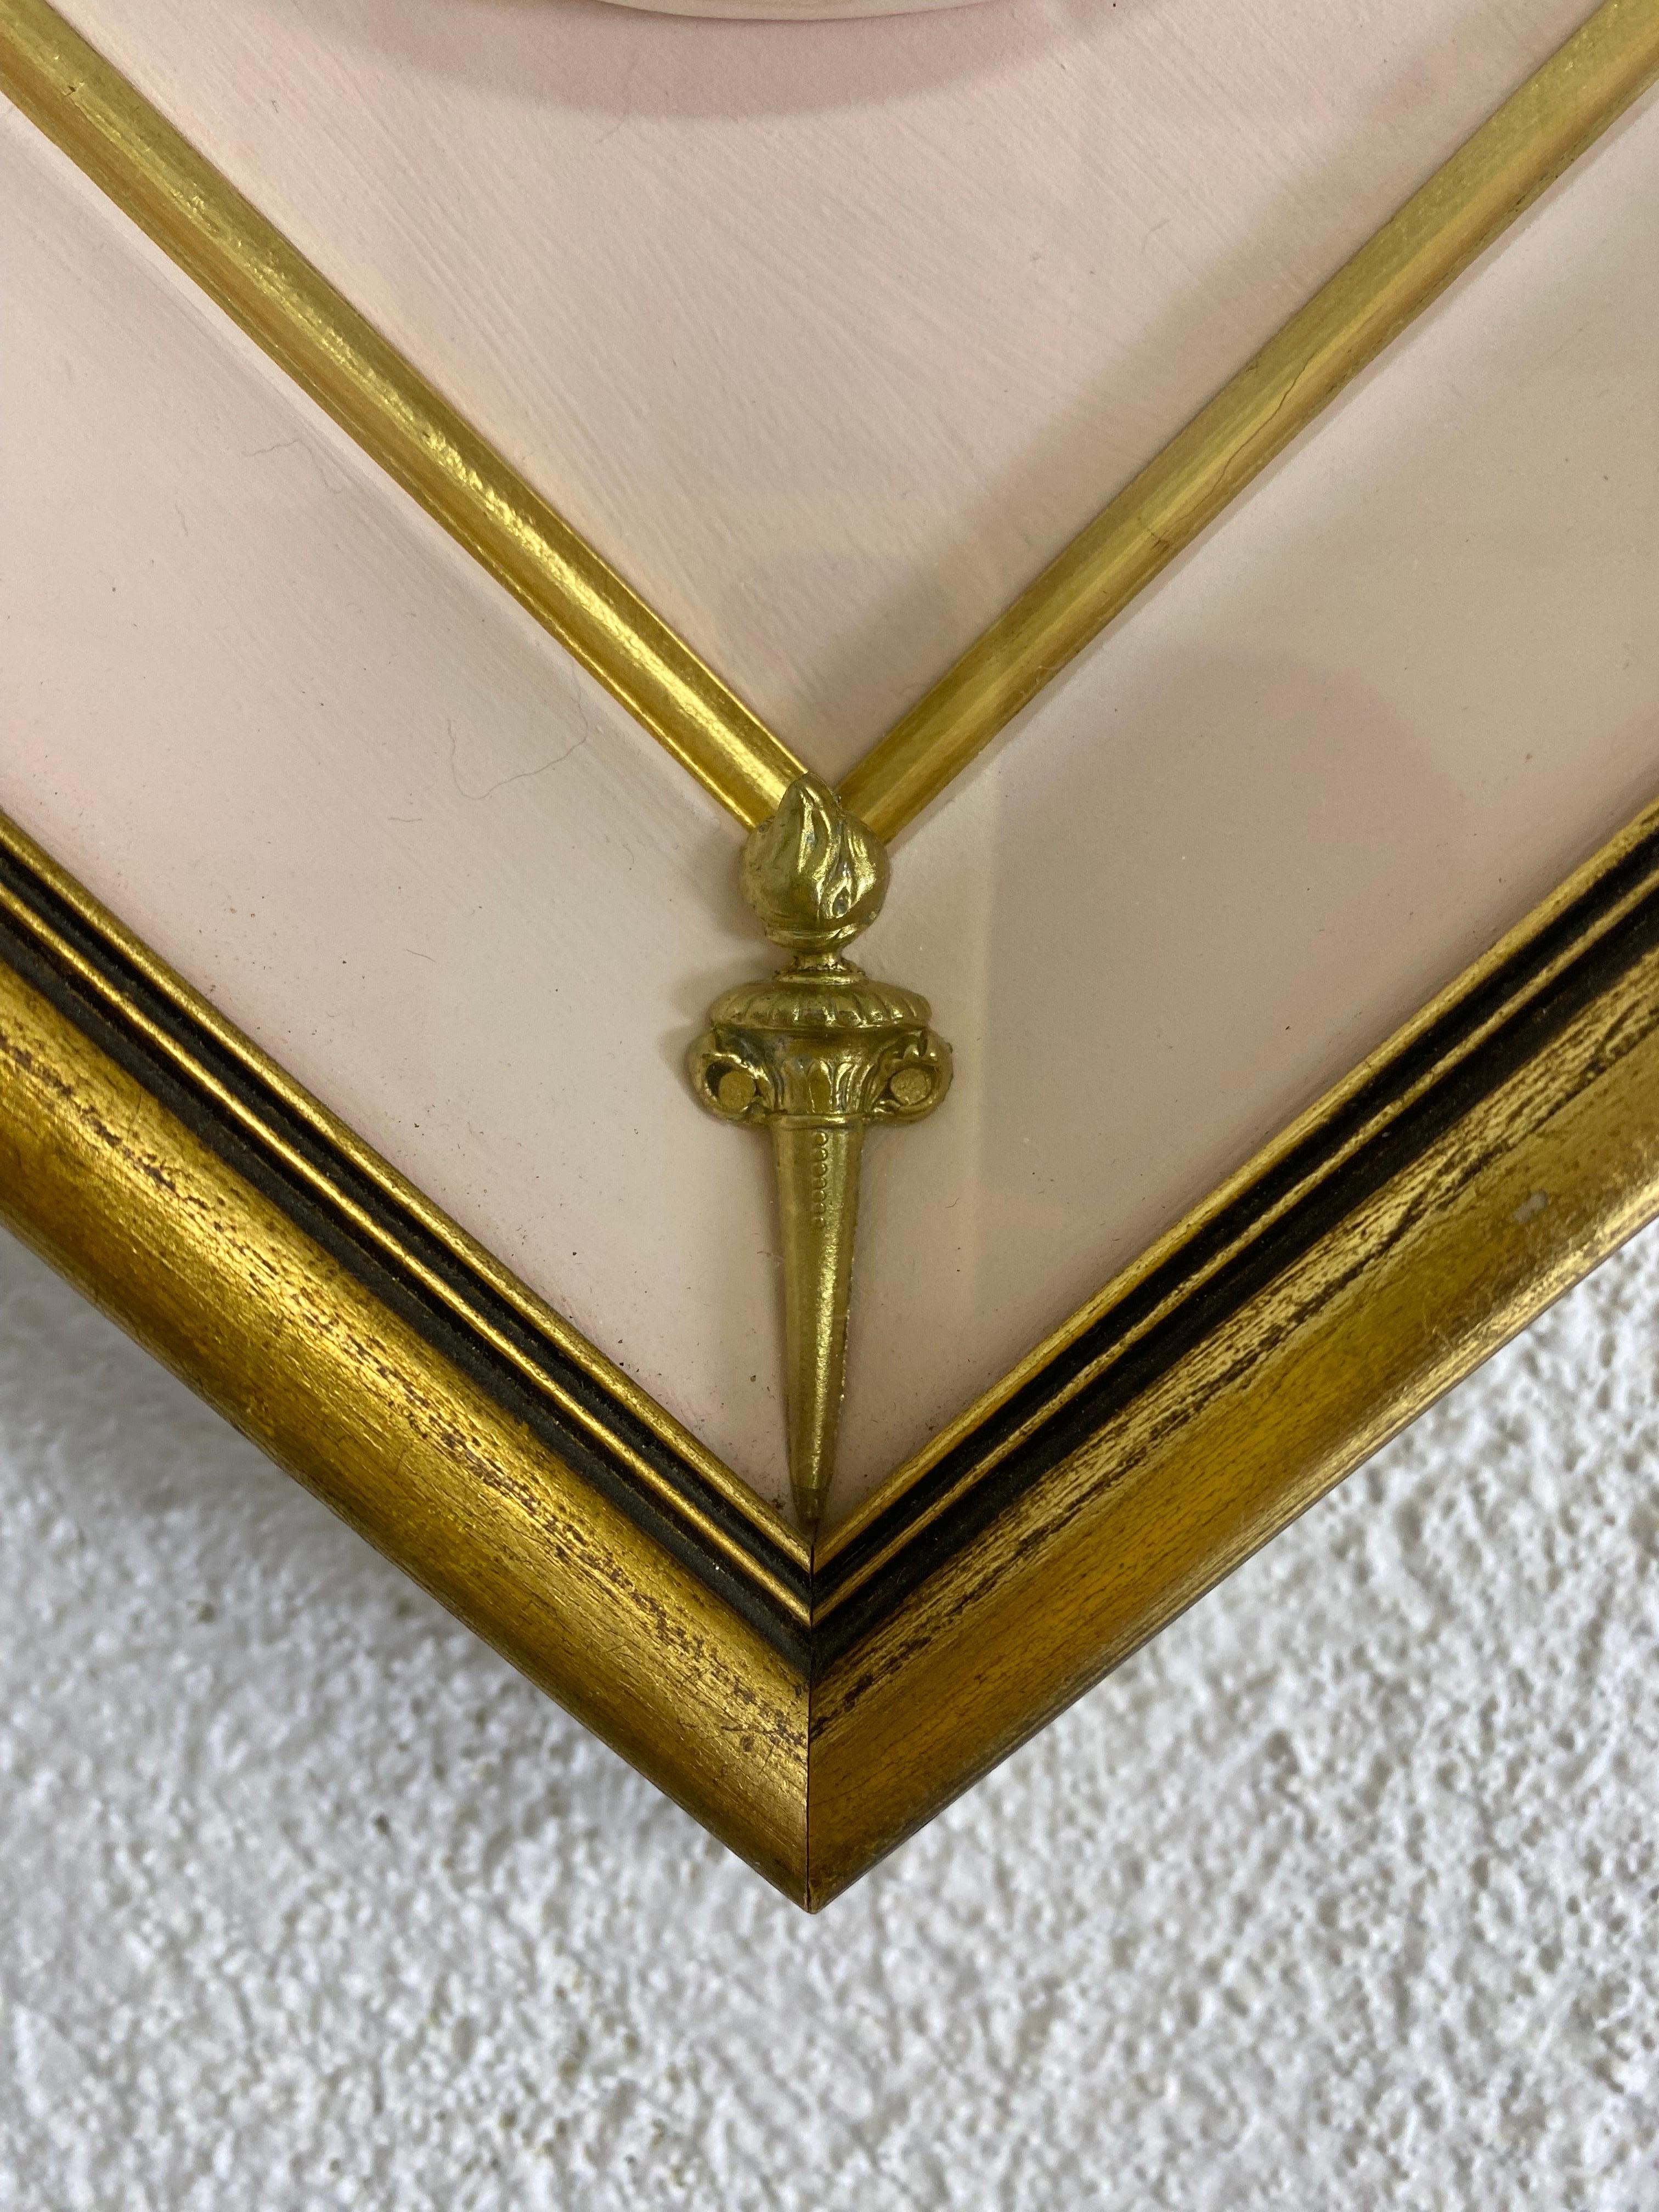 Il s'agit d'un Taglio italien en biscuit à cadre datant du milieu du 20e siècle. Ce médaillon en porcelaine biscuit de style gréco-romain est encadré dans un cadre à feuilles d'or avec un intérieur rose et des détails dorés. Ce cadre médaillon a été